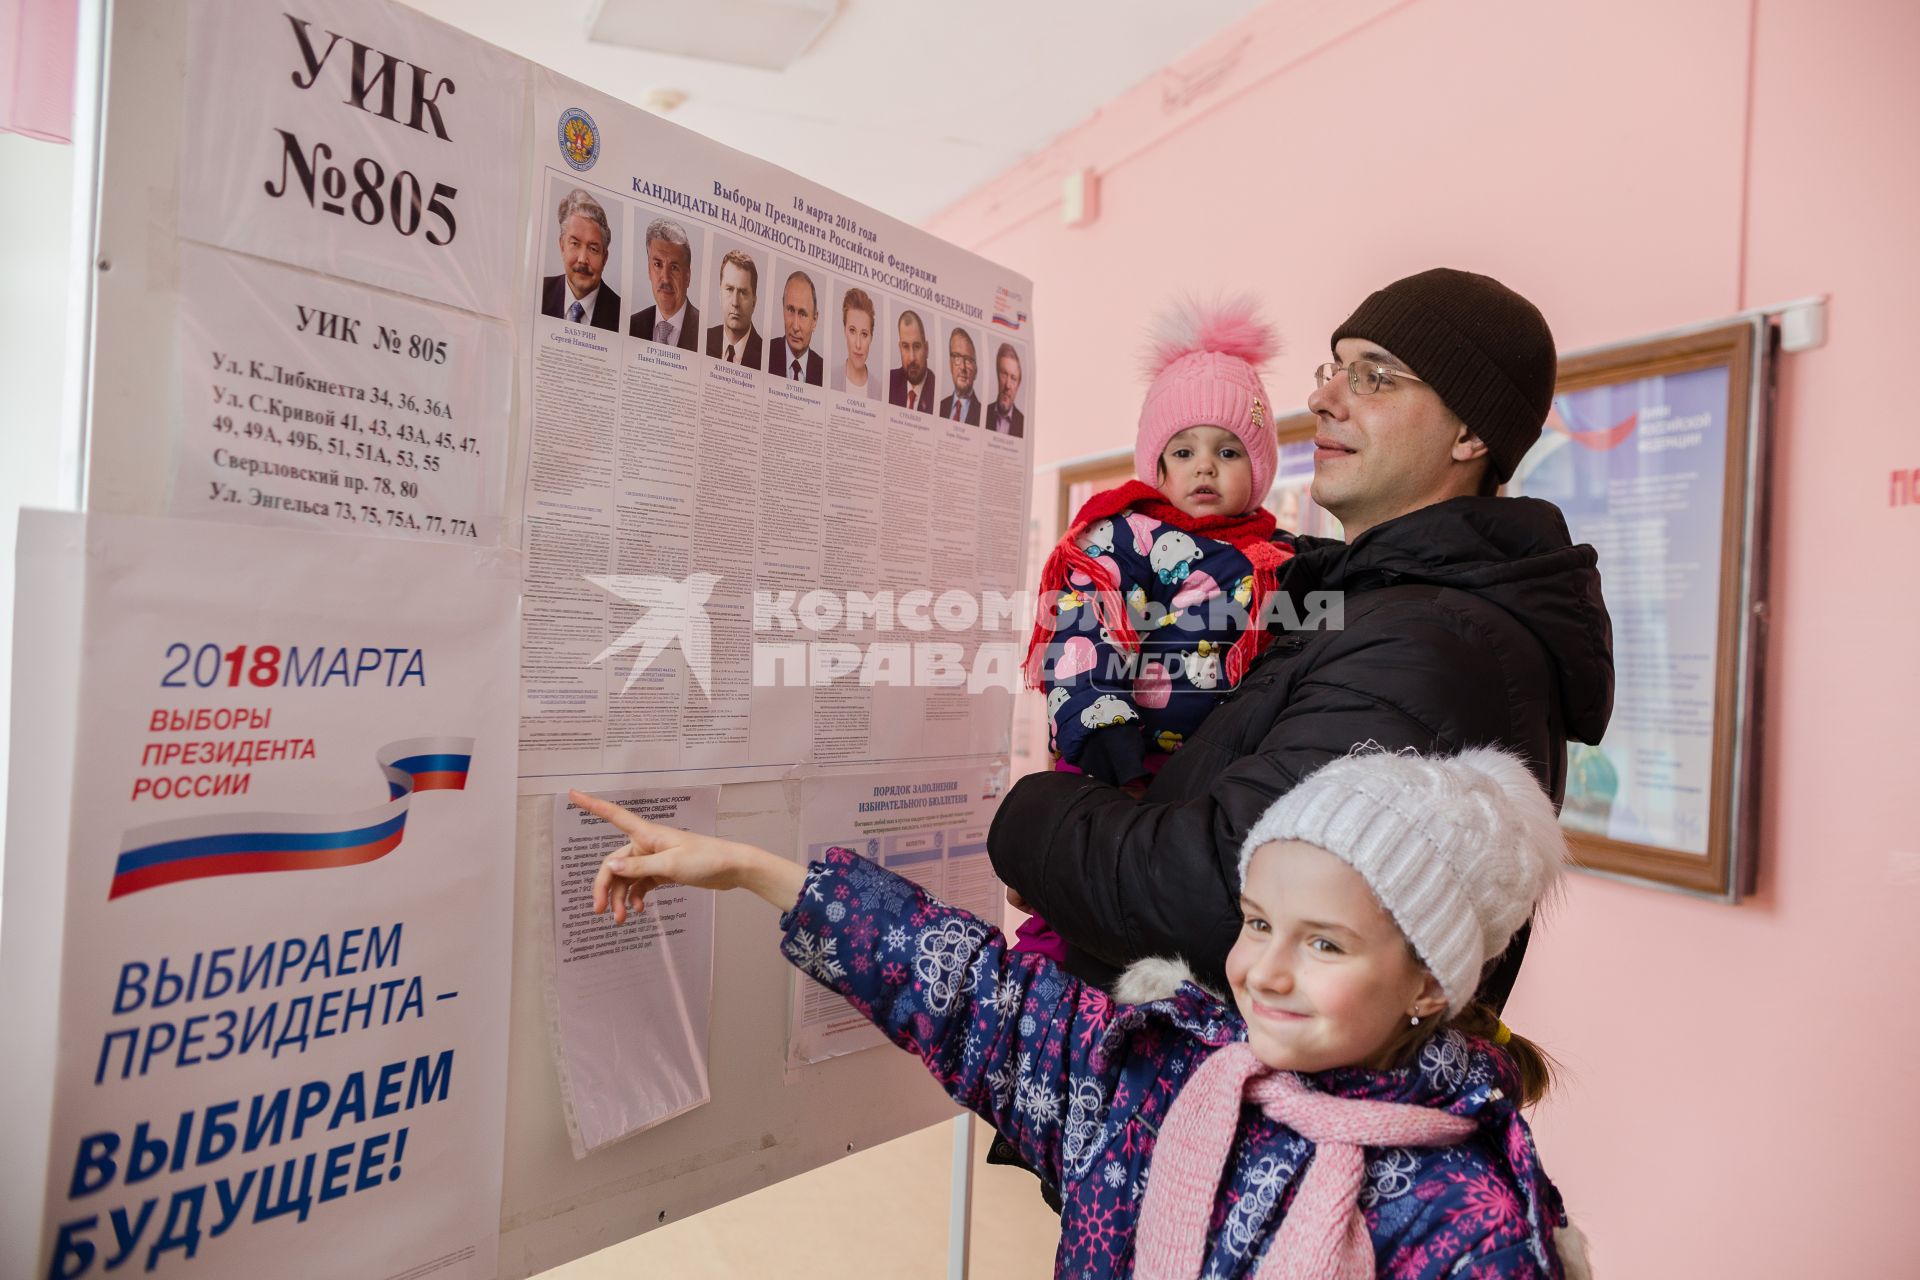 Челябинск. Мужчина с детьми у стенда с кандидатами на должность президента РФ на избирательном участке #805.